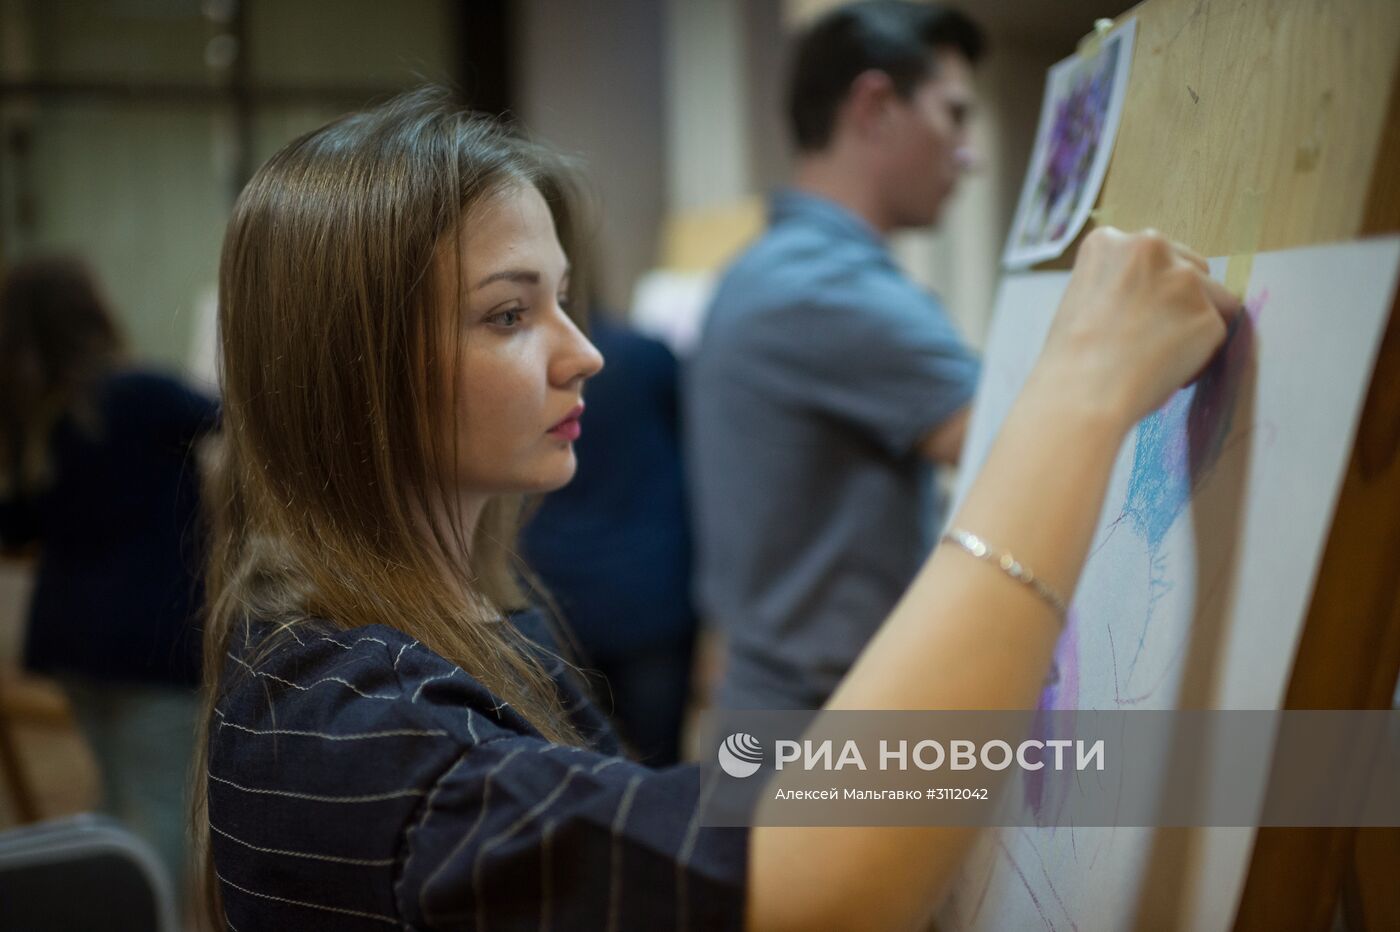 Акция "Библионочь-2017" в Омске